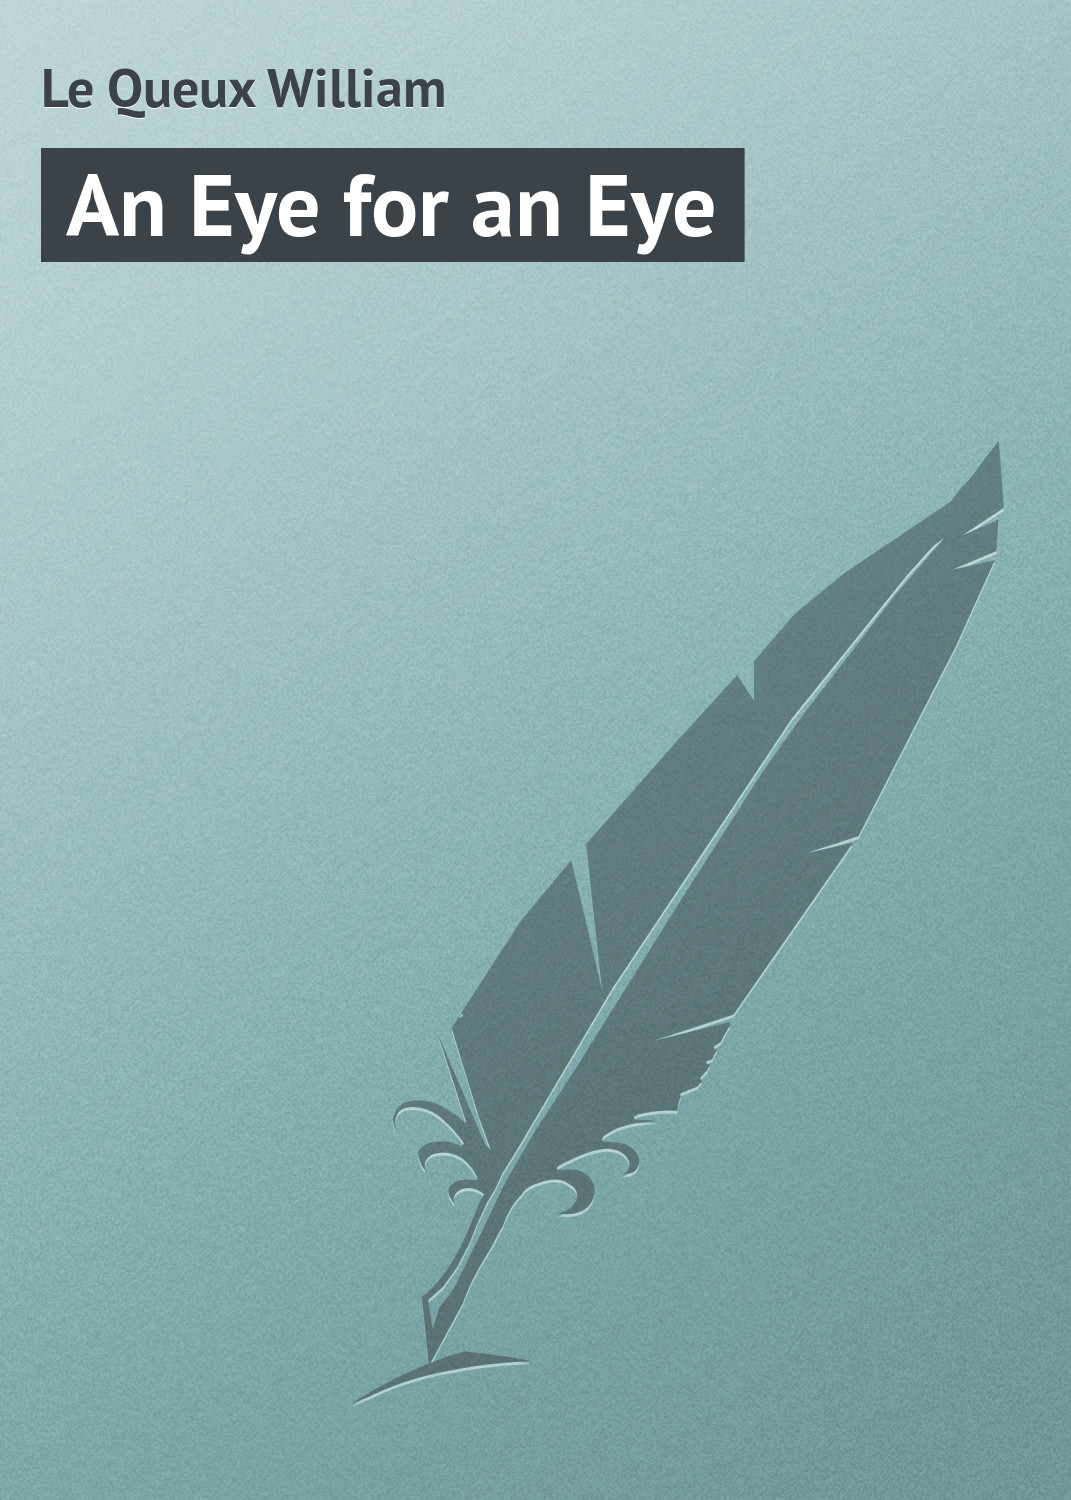 Книга An Eye for an Eye из серии , созданная William Le Queux, может относится к жанру Зарубежная классика. Стоимость электронной книги An Eye for an Eye с идентификатором 23157451 составляет 5.99 руб.